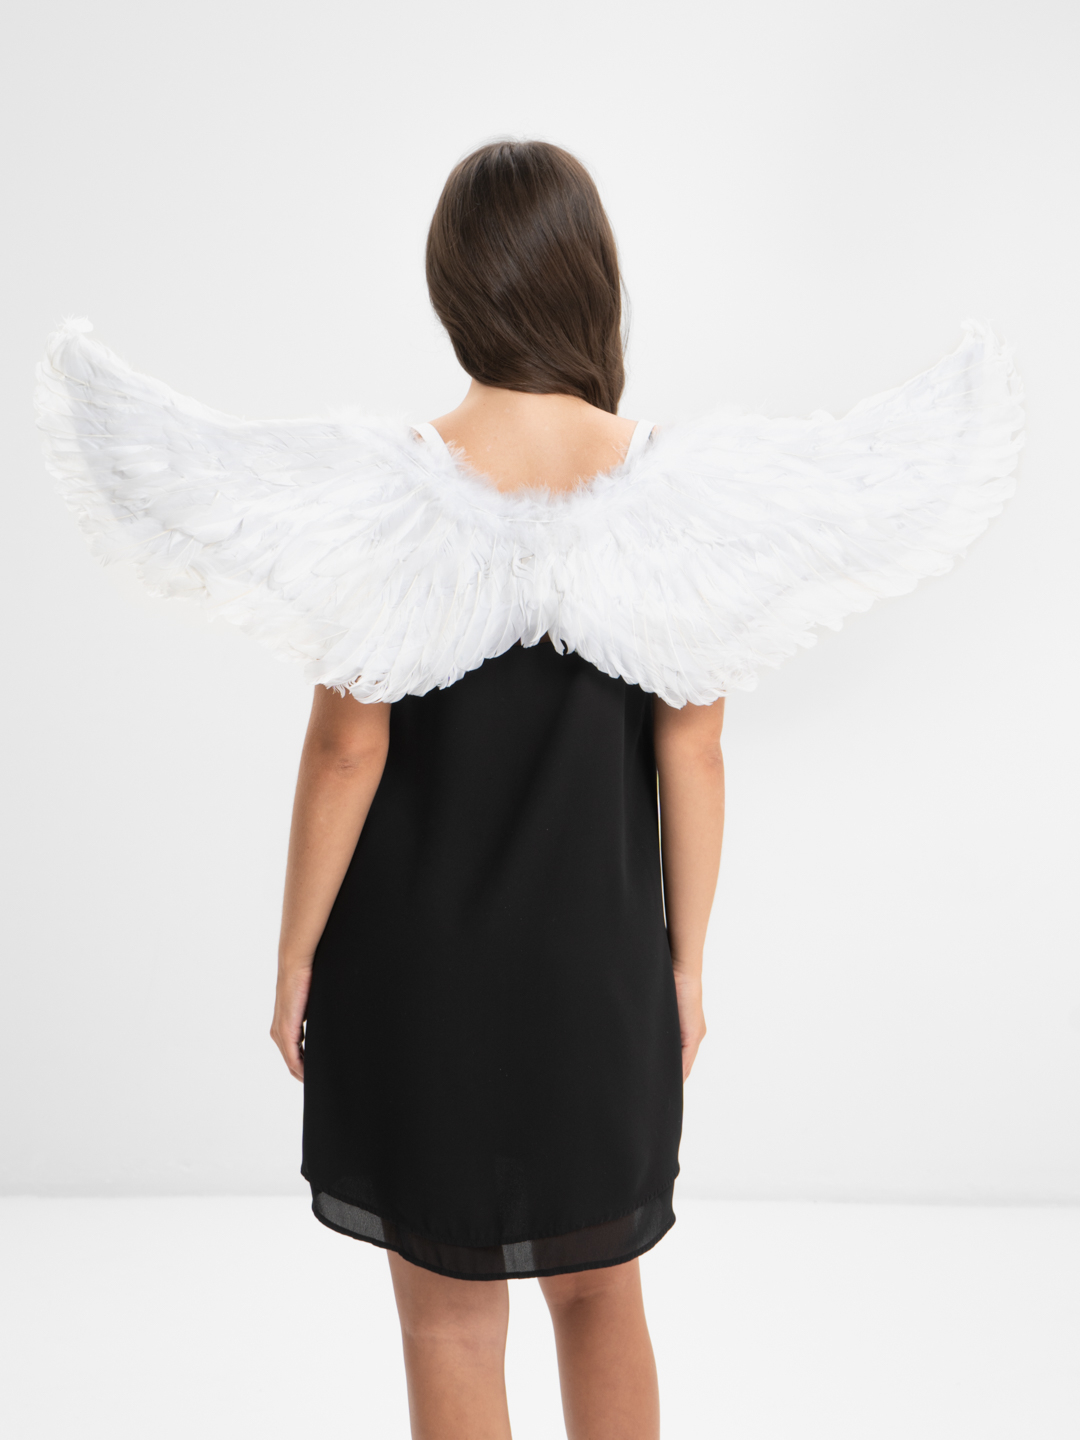 Как сделать крылья ангела своими руками из бумаги или ткани